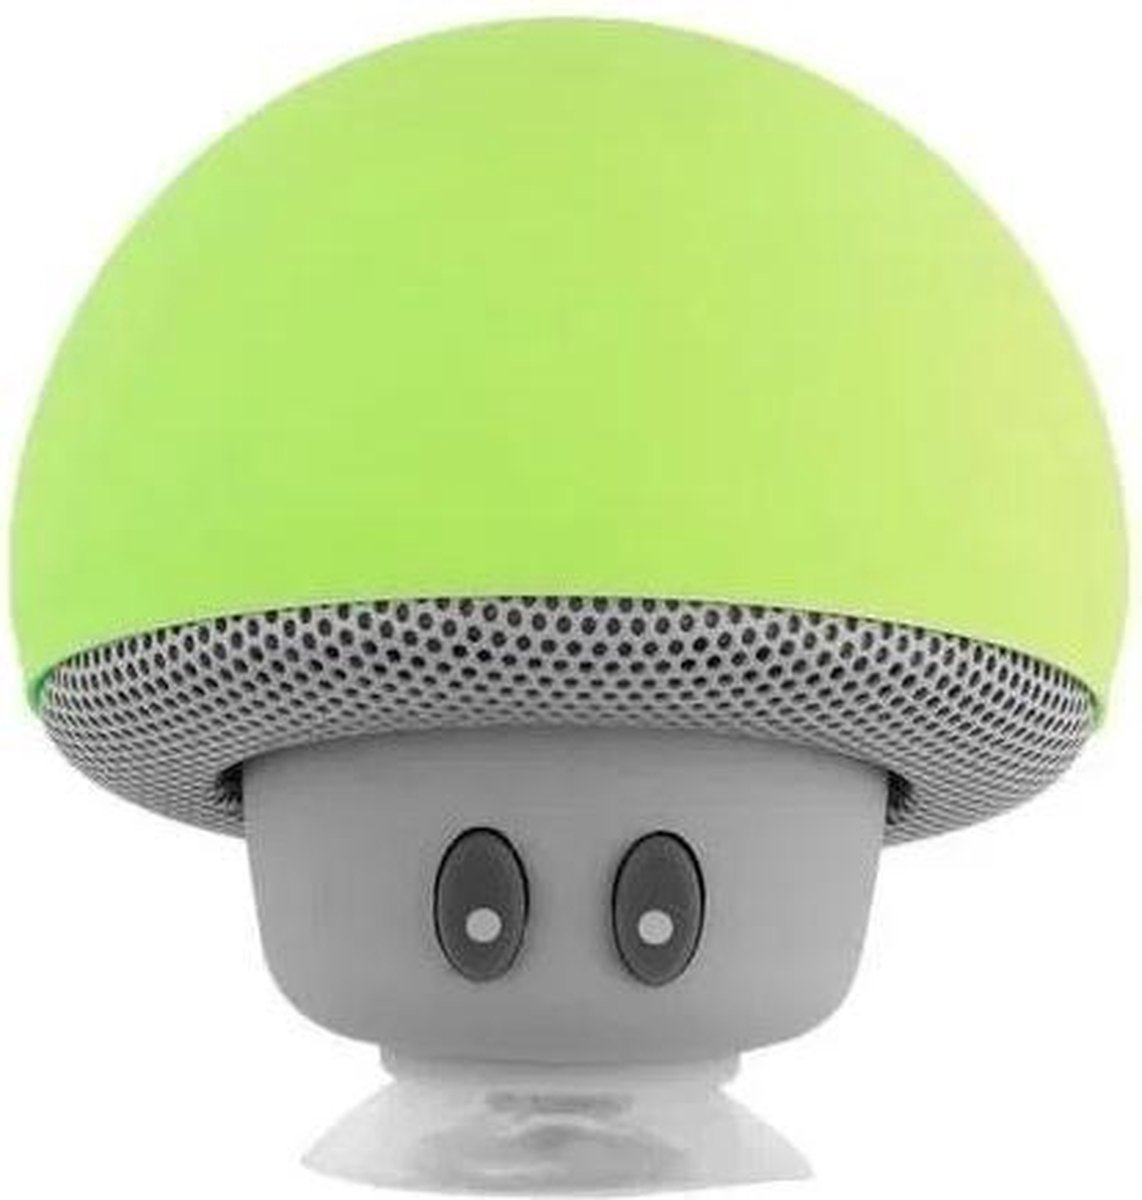 Liquno iCanto Mini Mushroom Bluetooth Speaker - Lime Groen